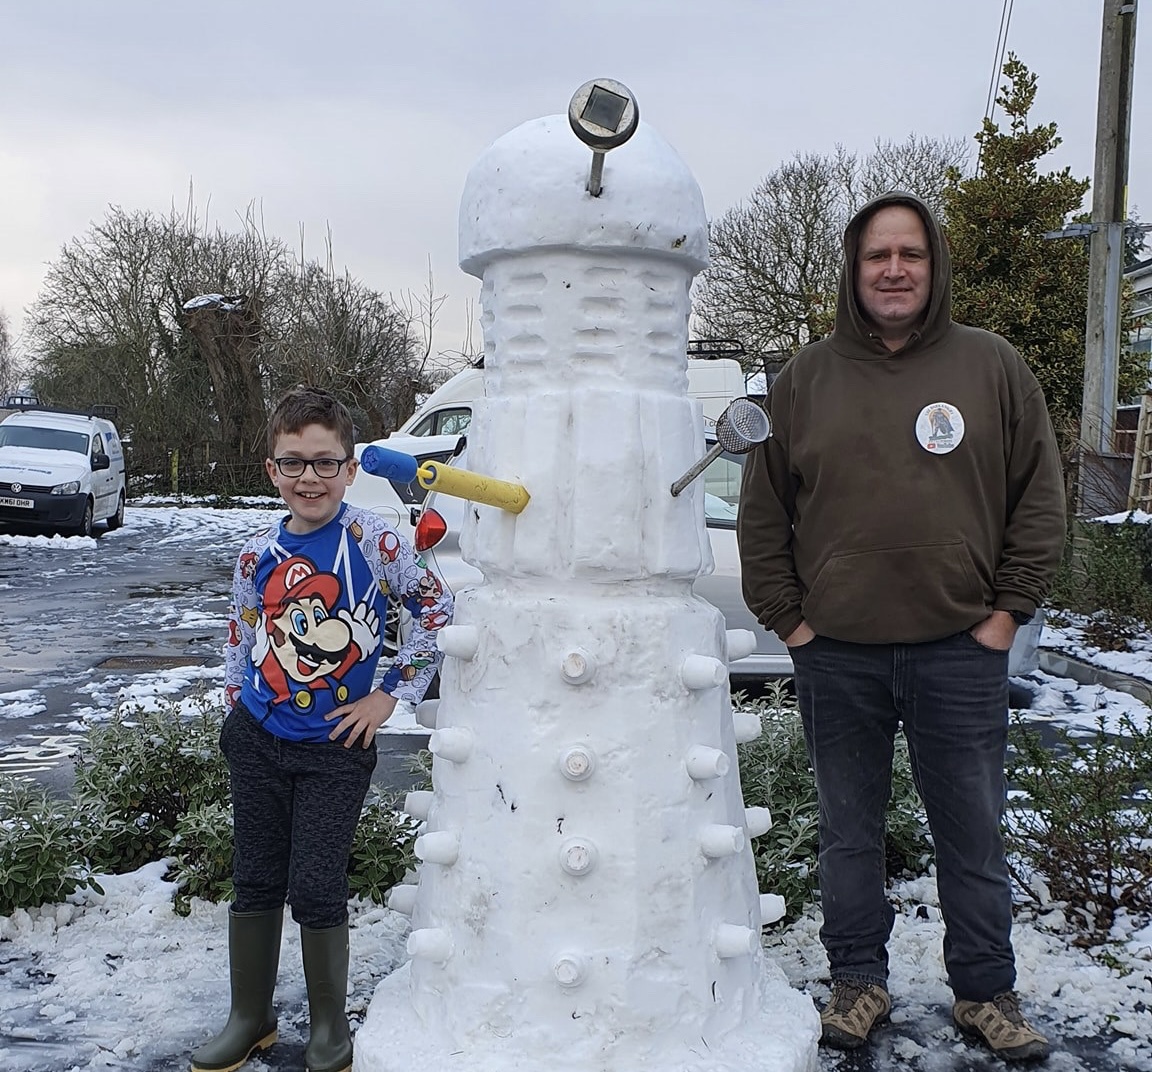 NEWS | Dalek snow sculpture in Kingsland goes viral!